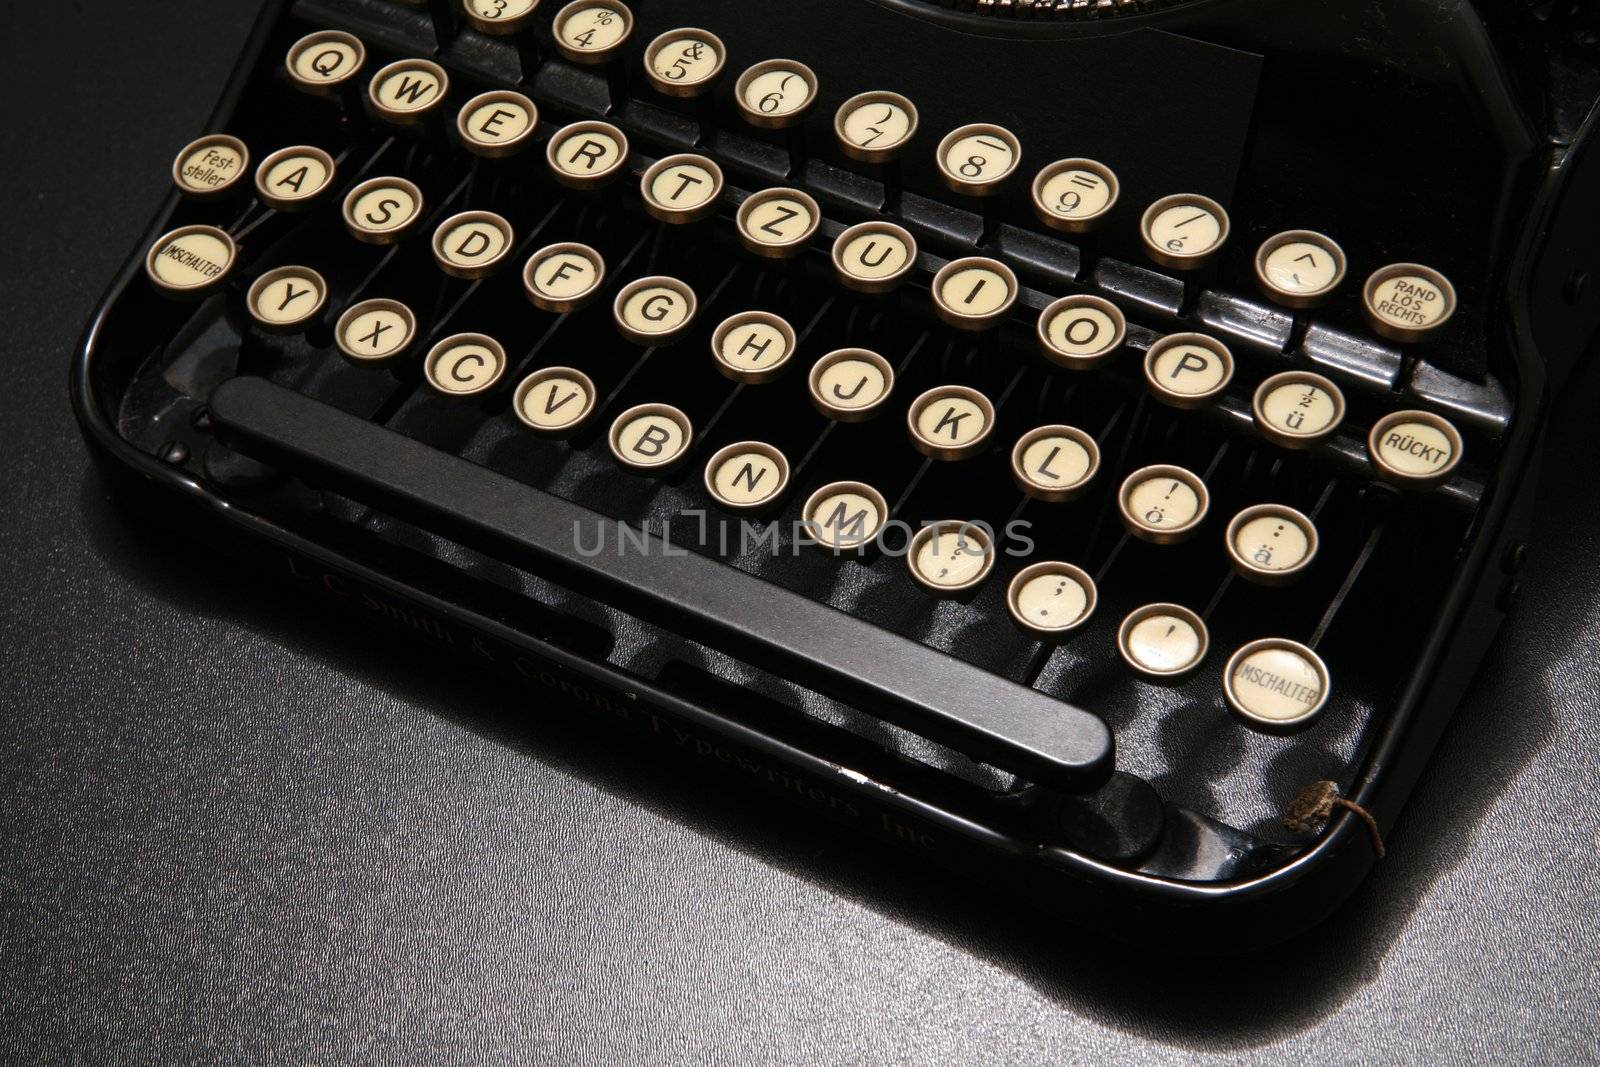 Typewriter by yucas